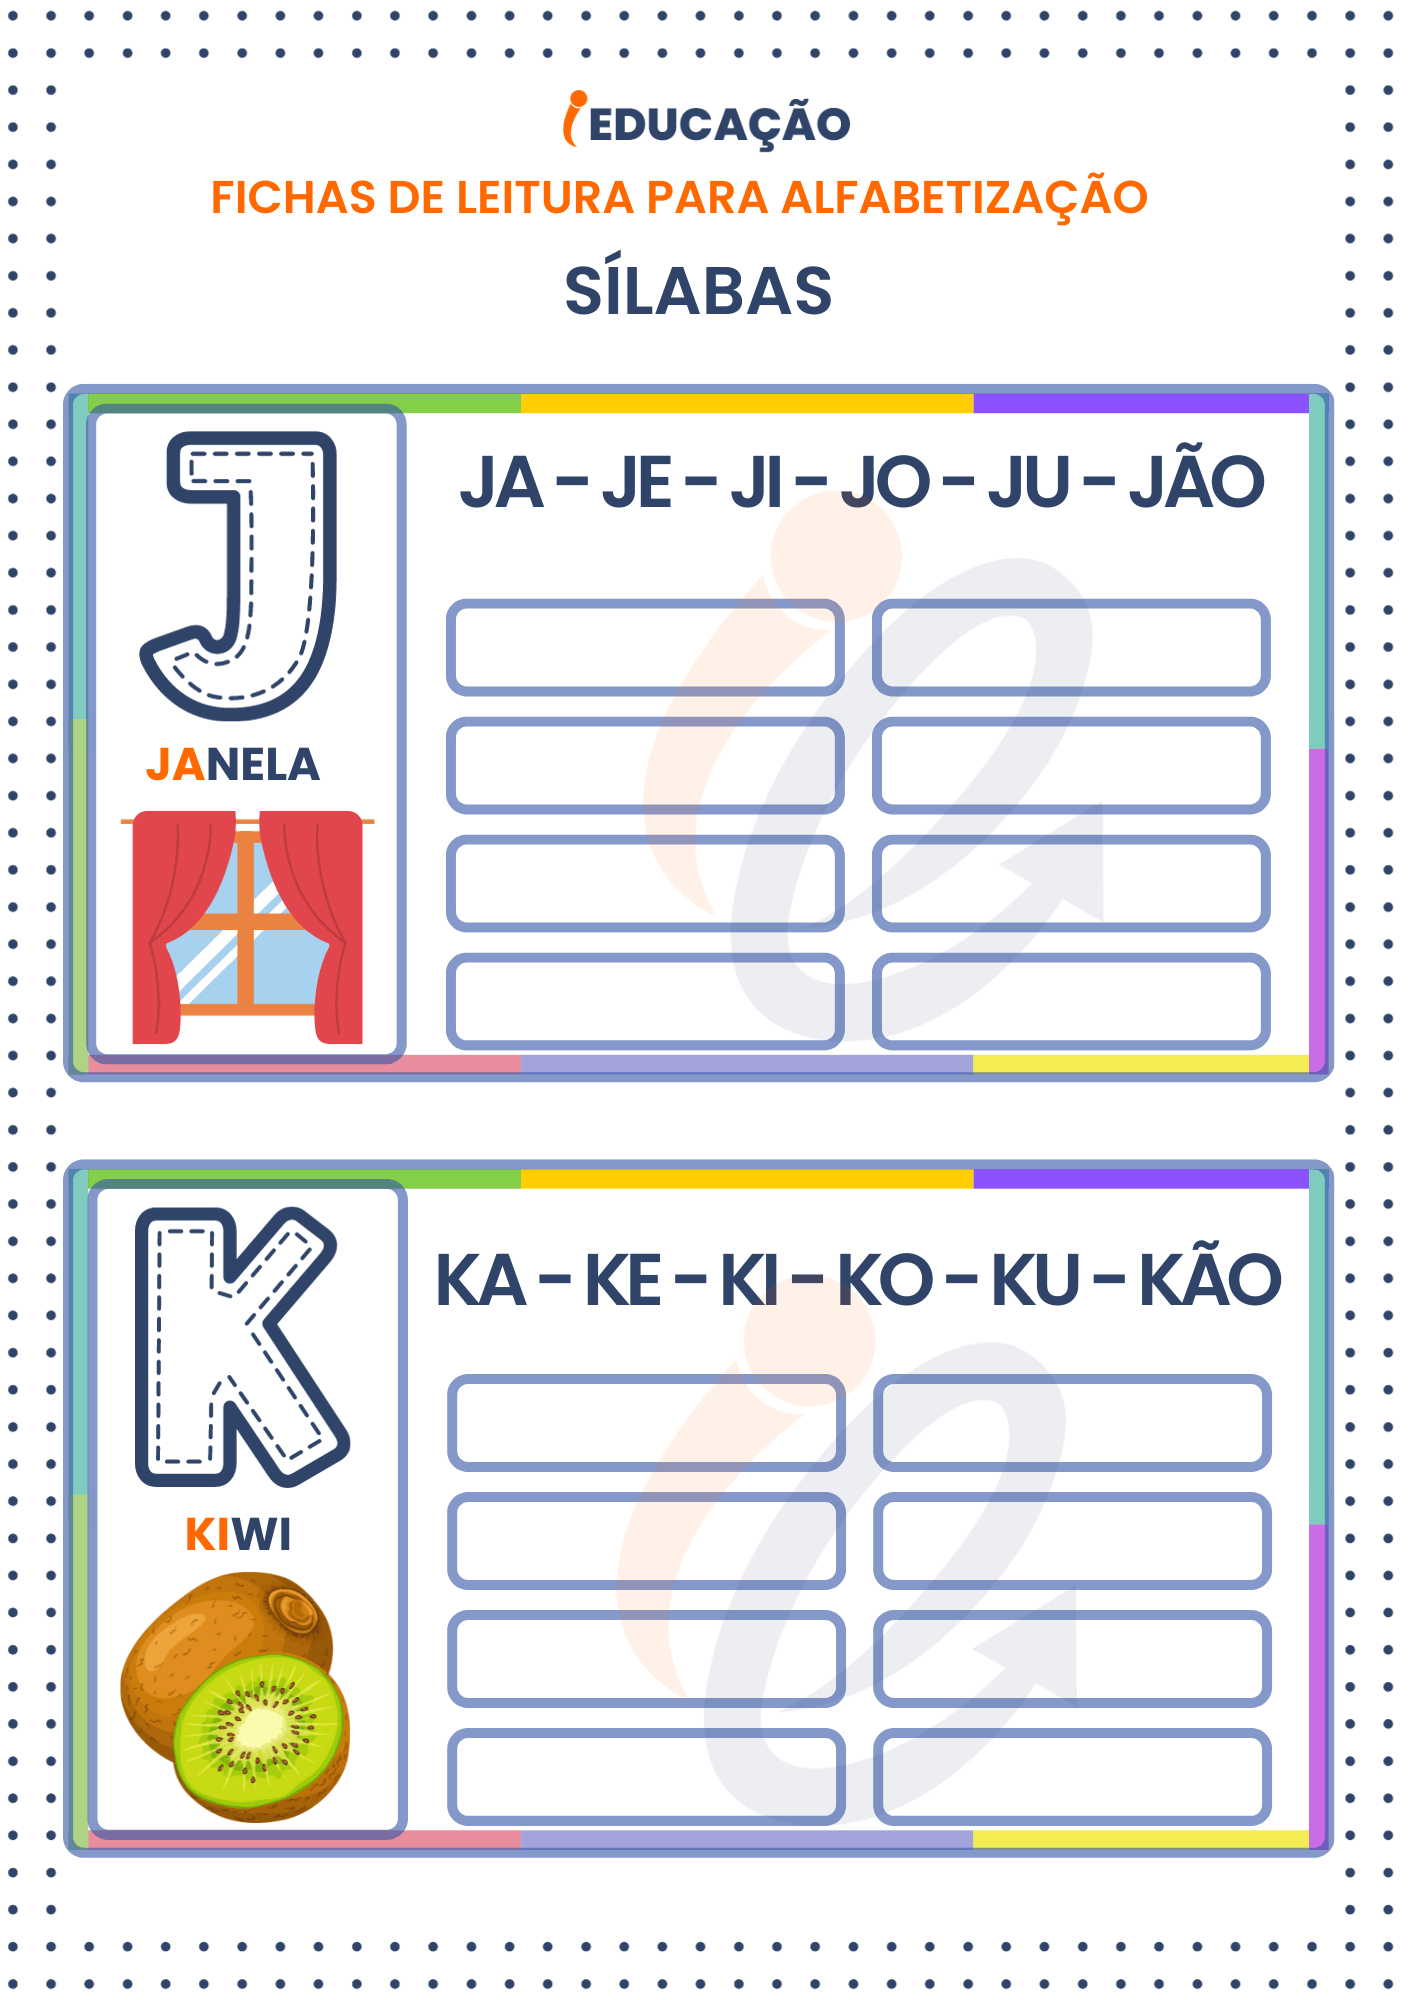 Fichas de Leitura Sílabas para Alfabetização: Sílabas das letras J e K